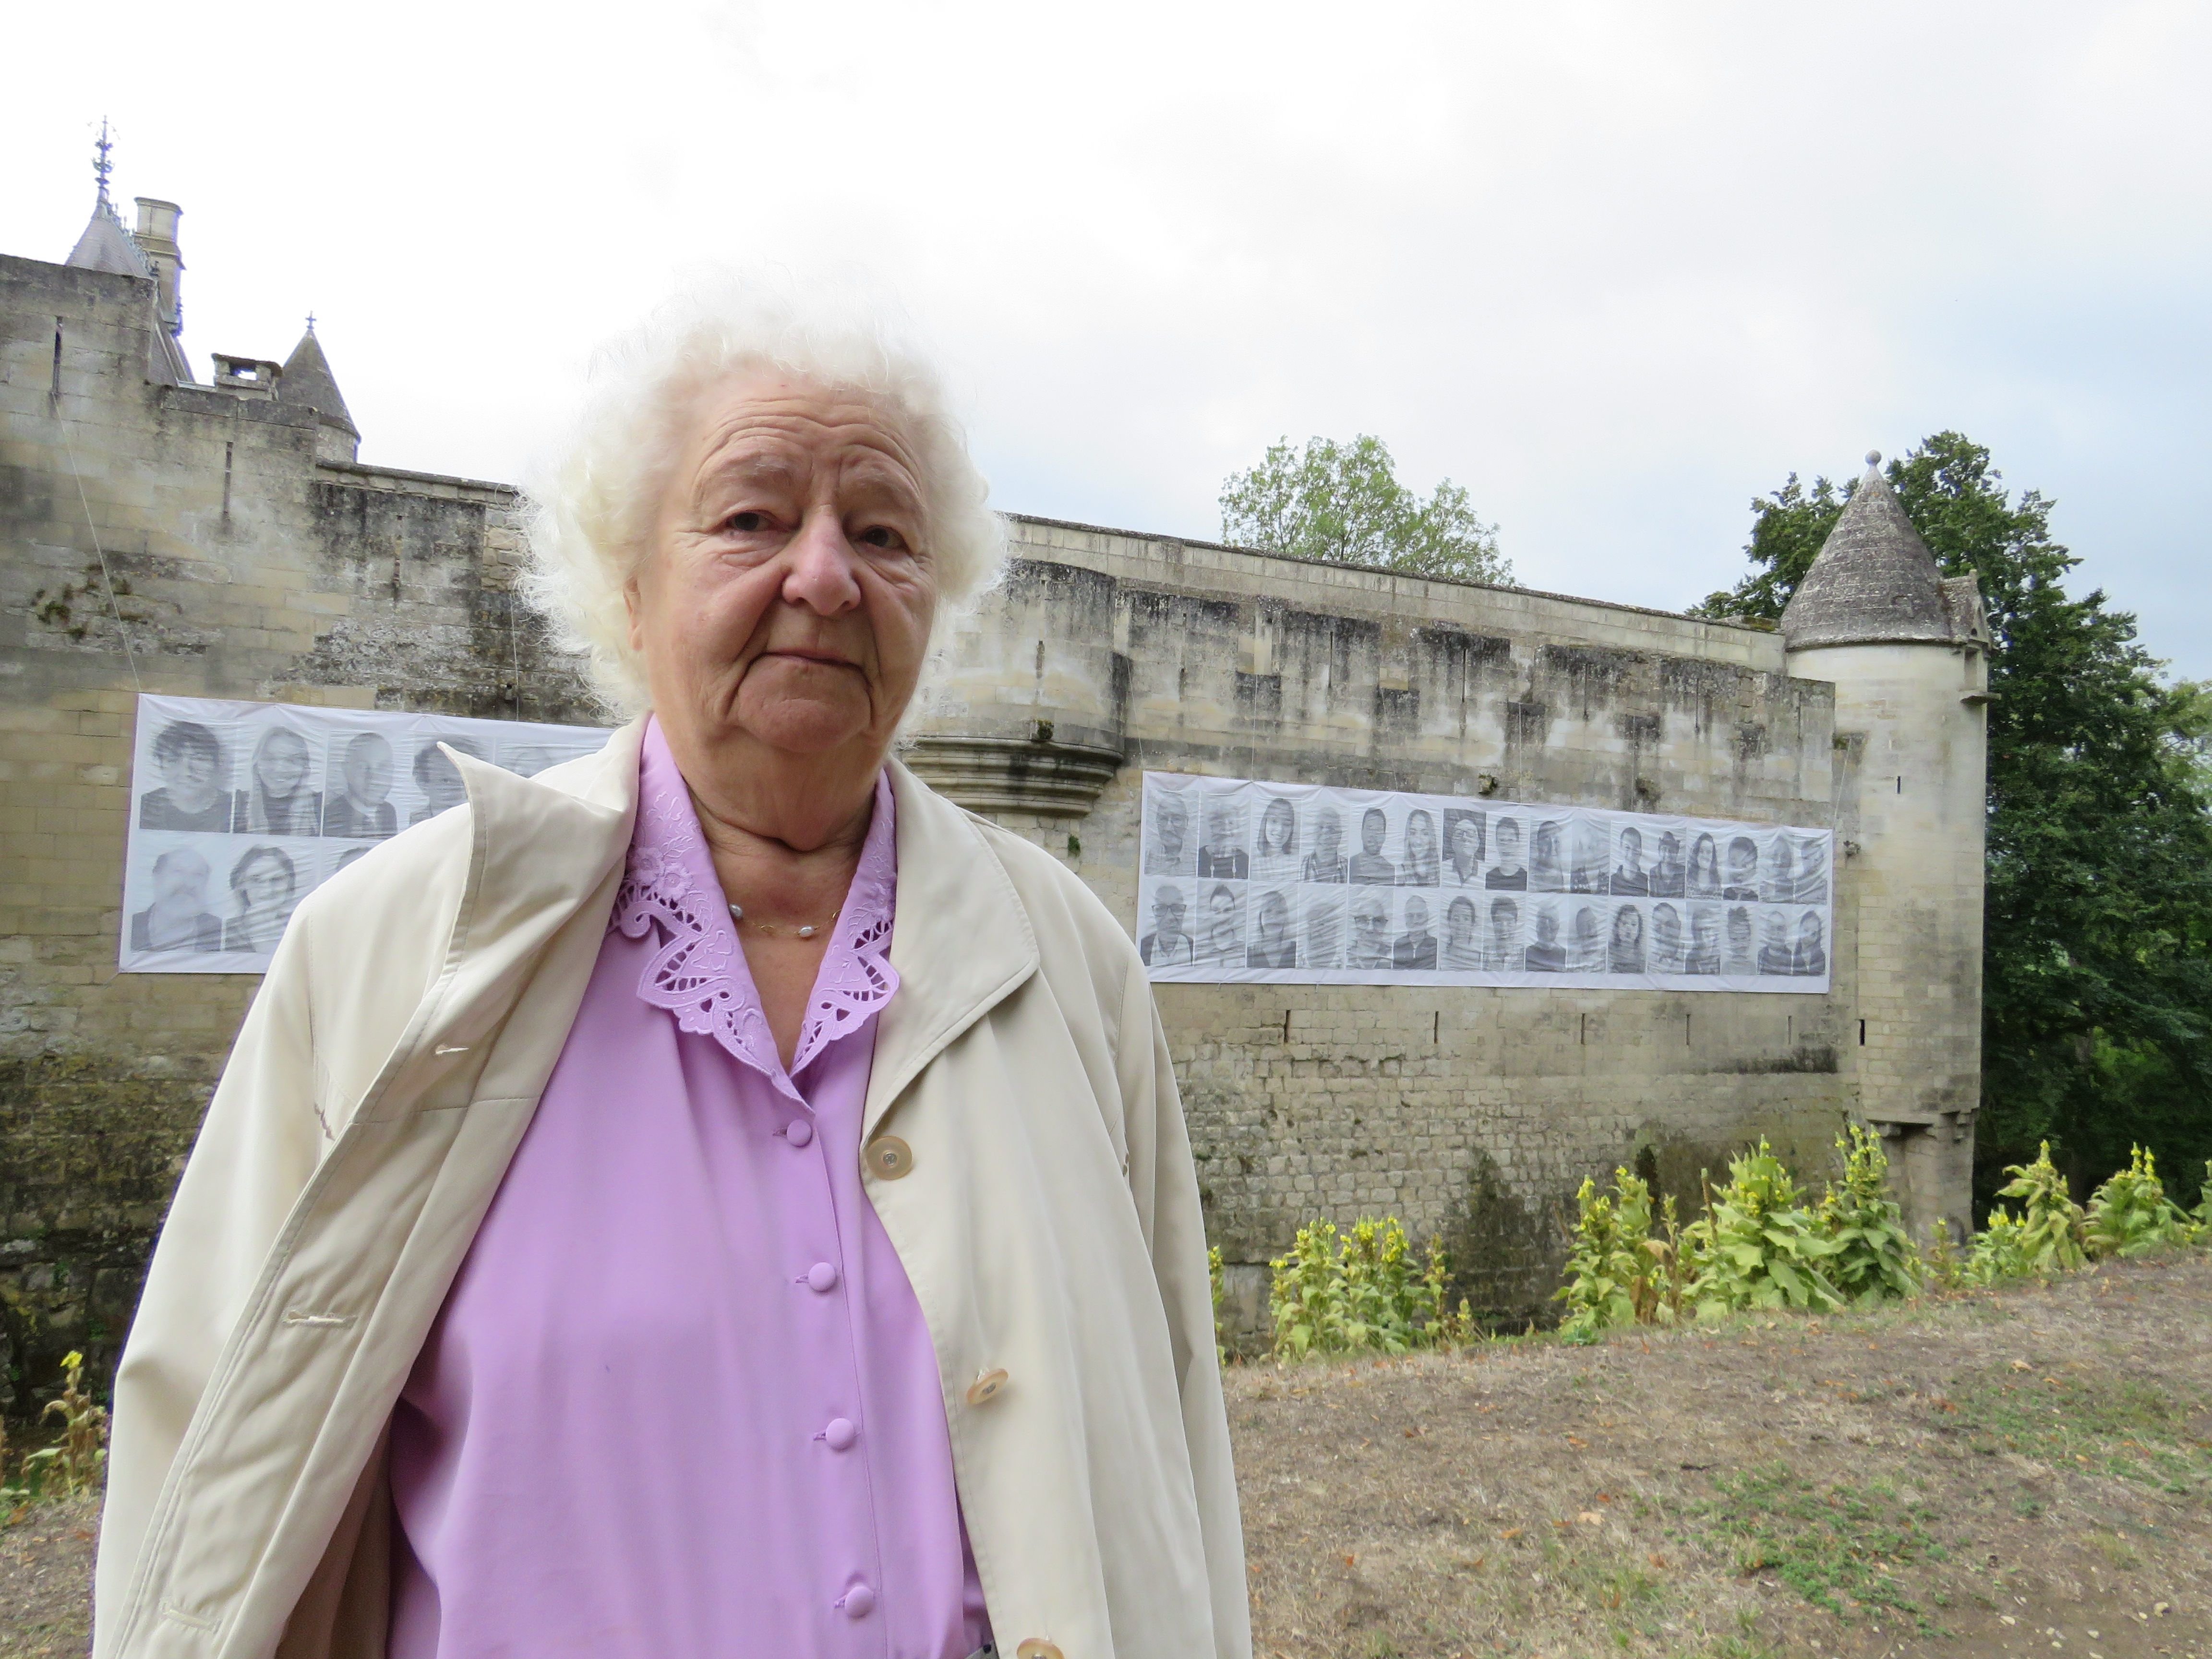 Donjon de Vez (Oise), jeudi 8 septembre. Amélina Vercleyen, 84 ans, fait partie des 108 visages qui représentent le Valois dans cette exposition initiée par l'artiste JR. LP/Stéphanie Forestier